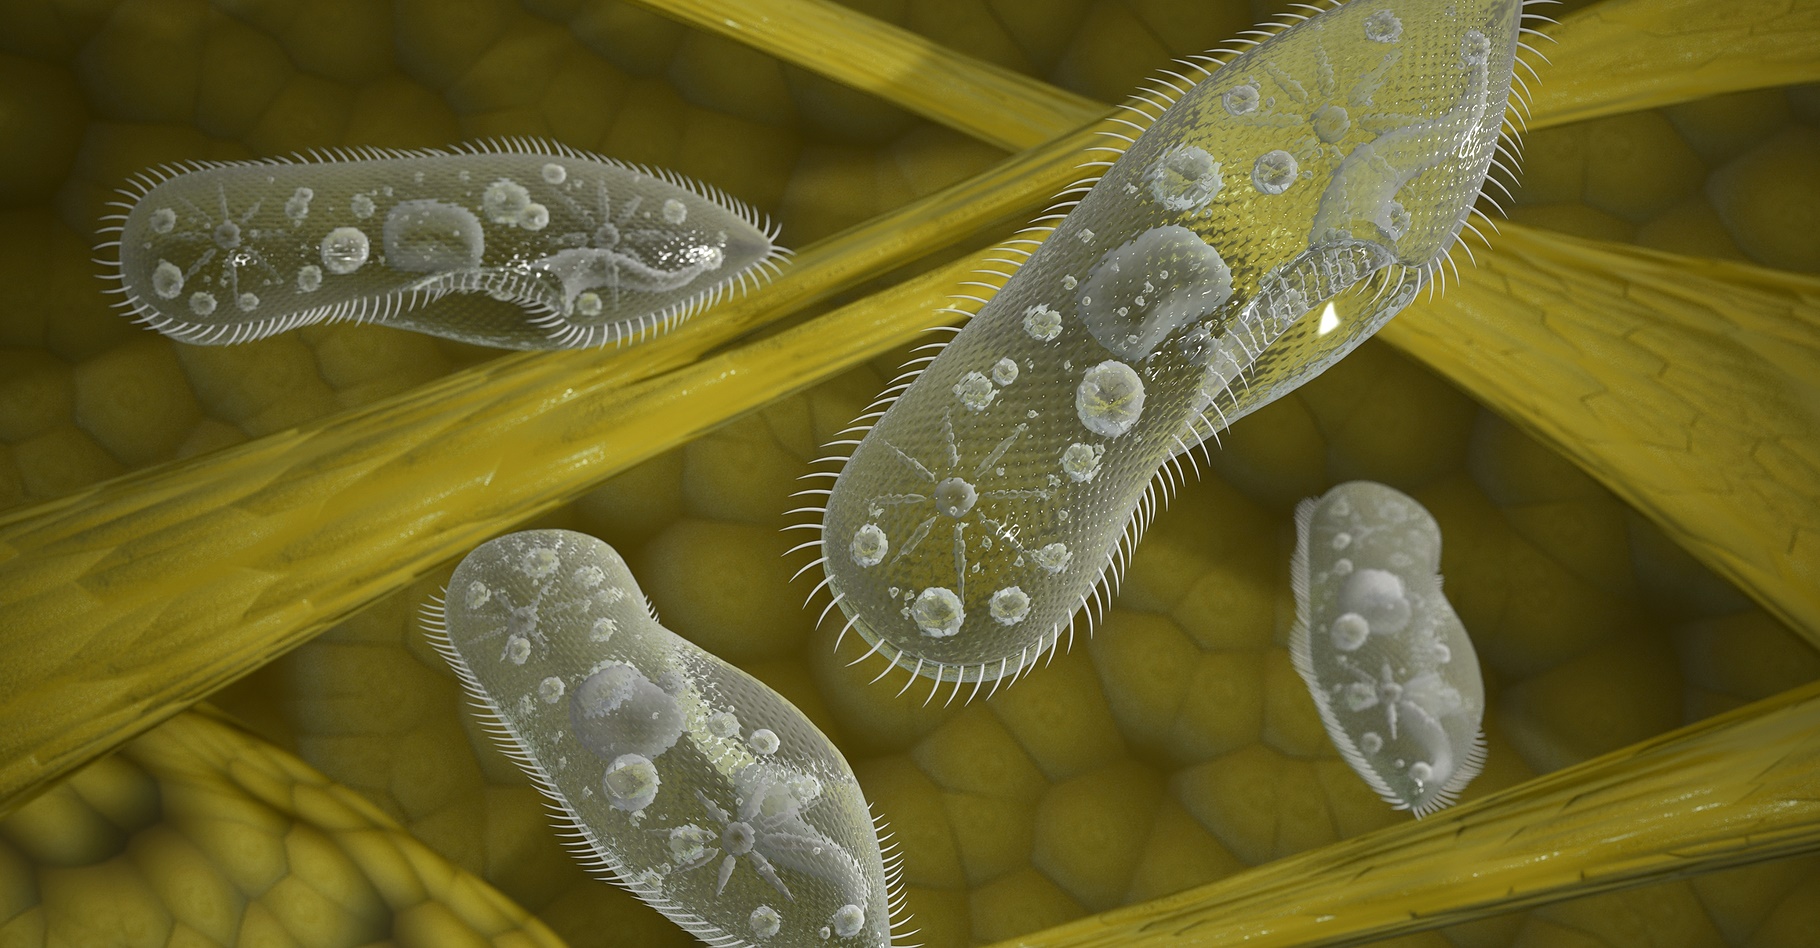 La paramécie est un protozoaire cilié qui a servi de modèle pour fabriquer un nouveau microrobot. © Wire_man, Shutterstock